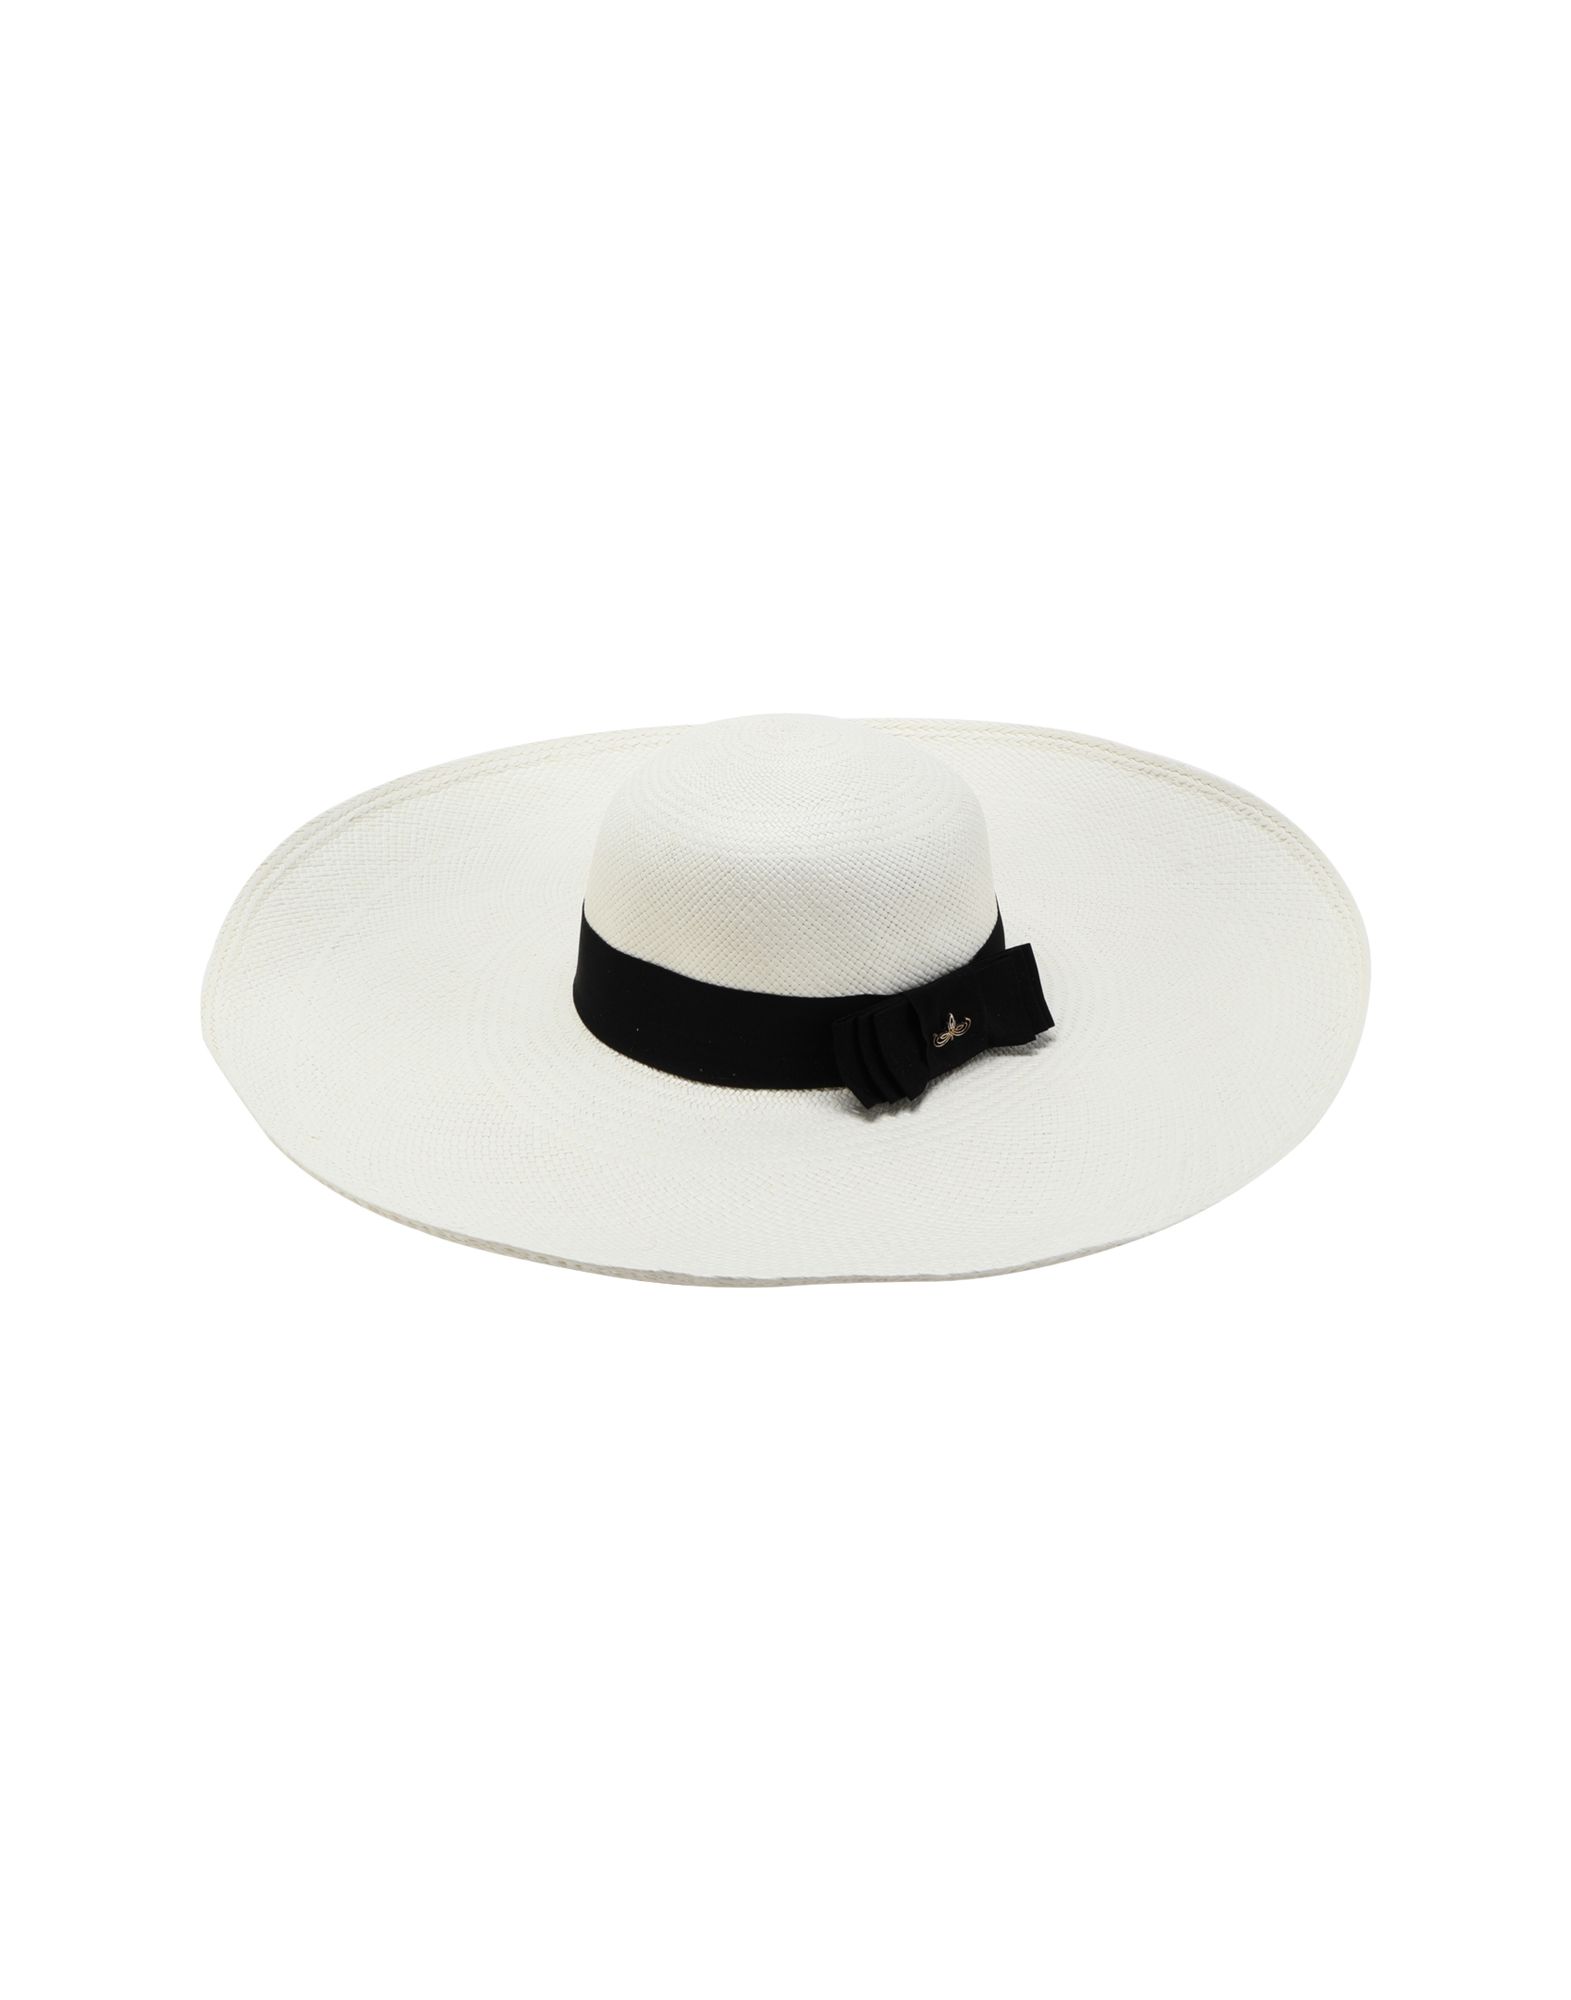 《セール開催中》PANAMA HATTERS レディース 帽子 ホワイト L ストロー 100% AUDREY LADY COLLECTION WHITE BLACK +TRAVEL BAG